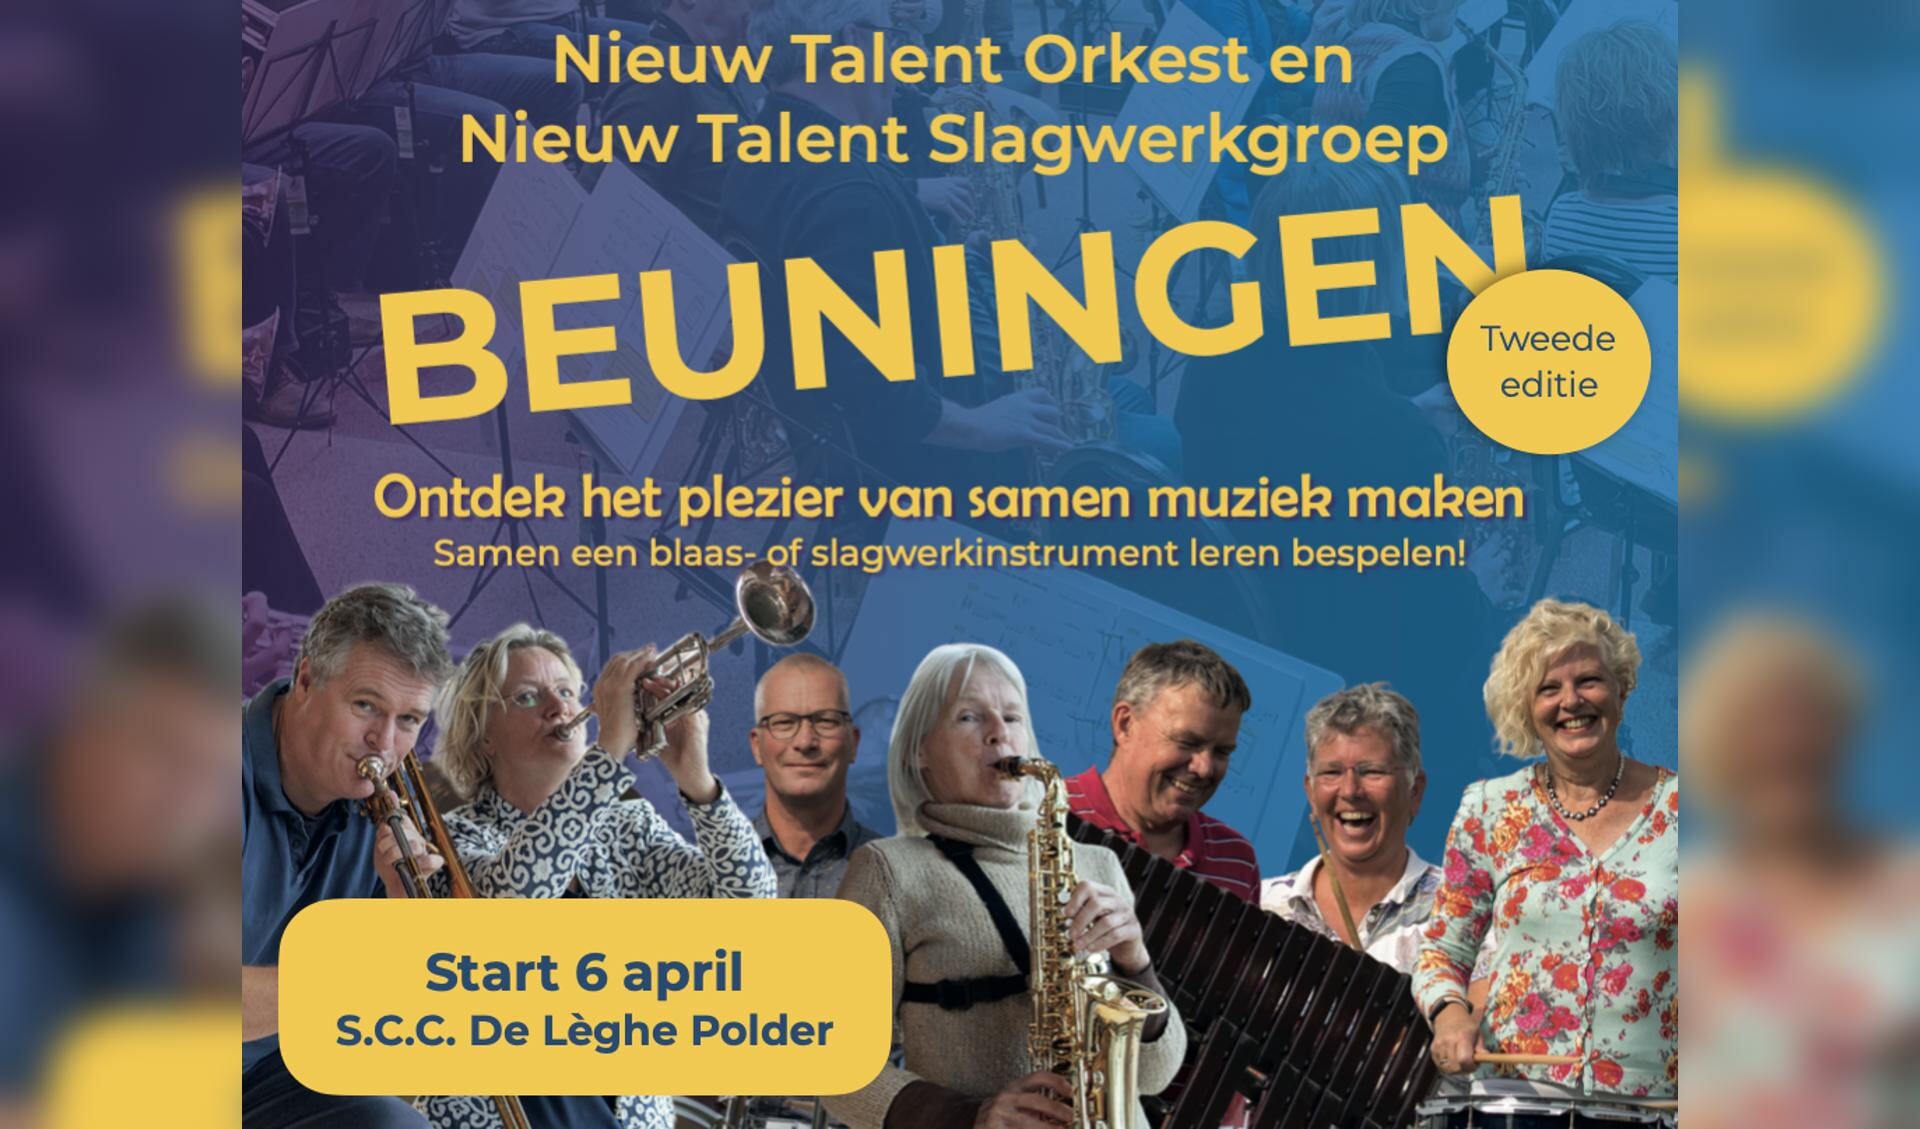 Nieuw Talent Orkest en Slagwerkgroep